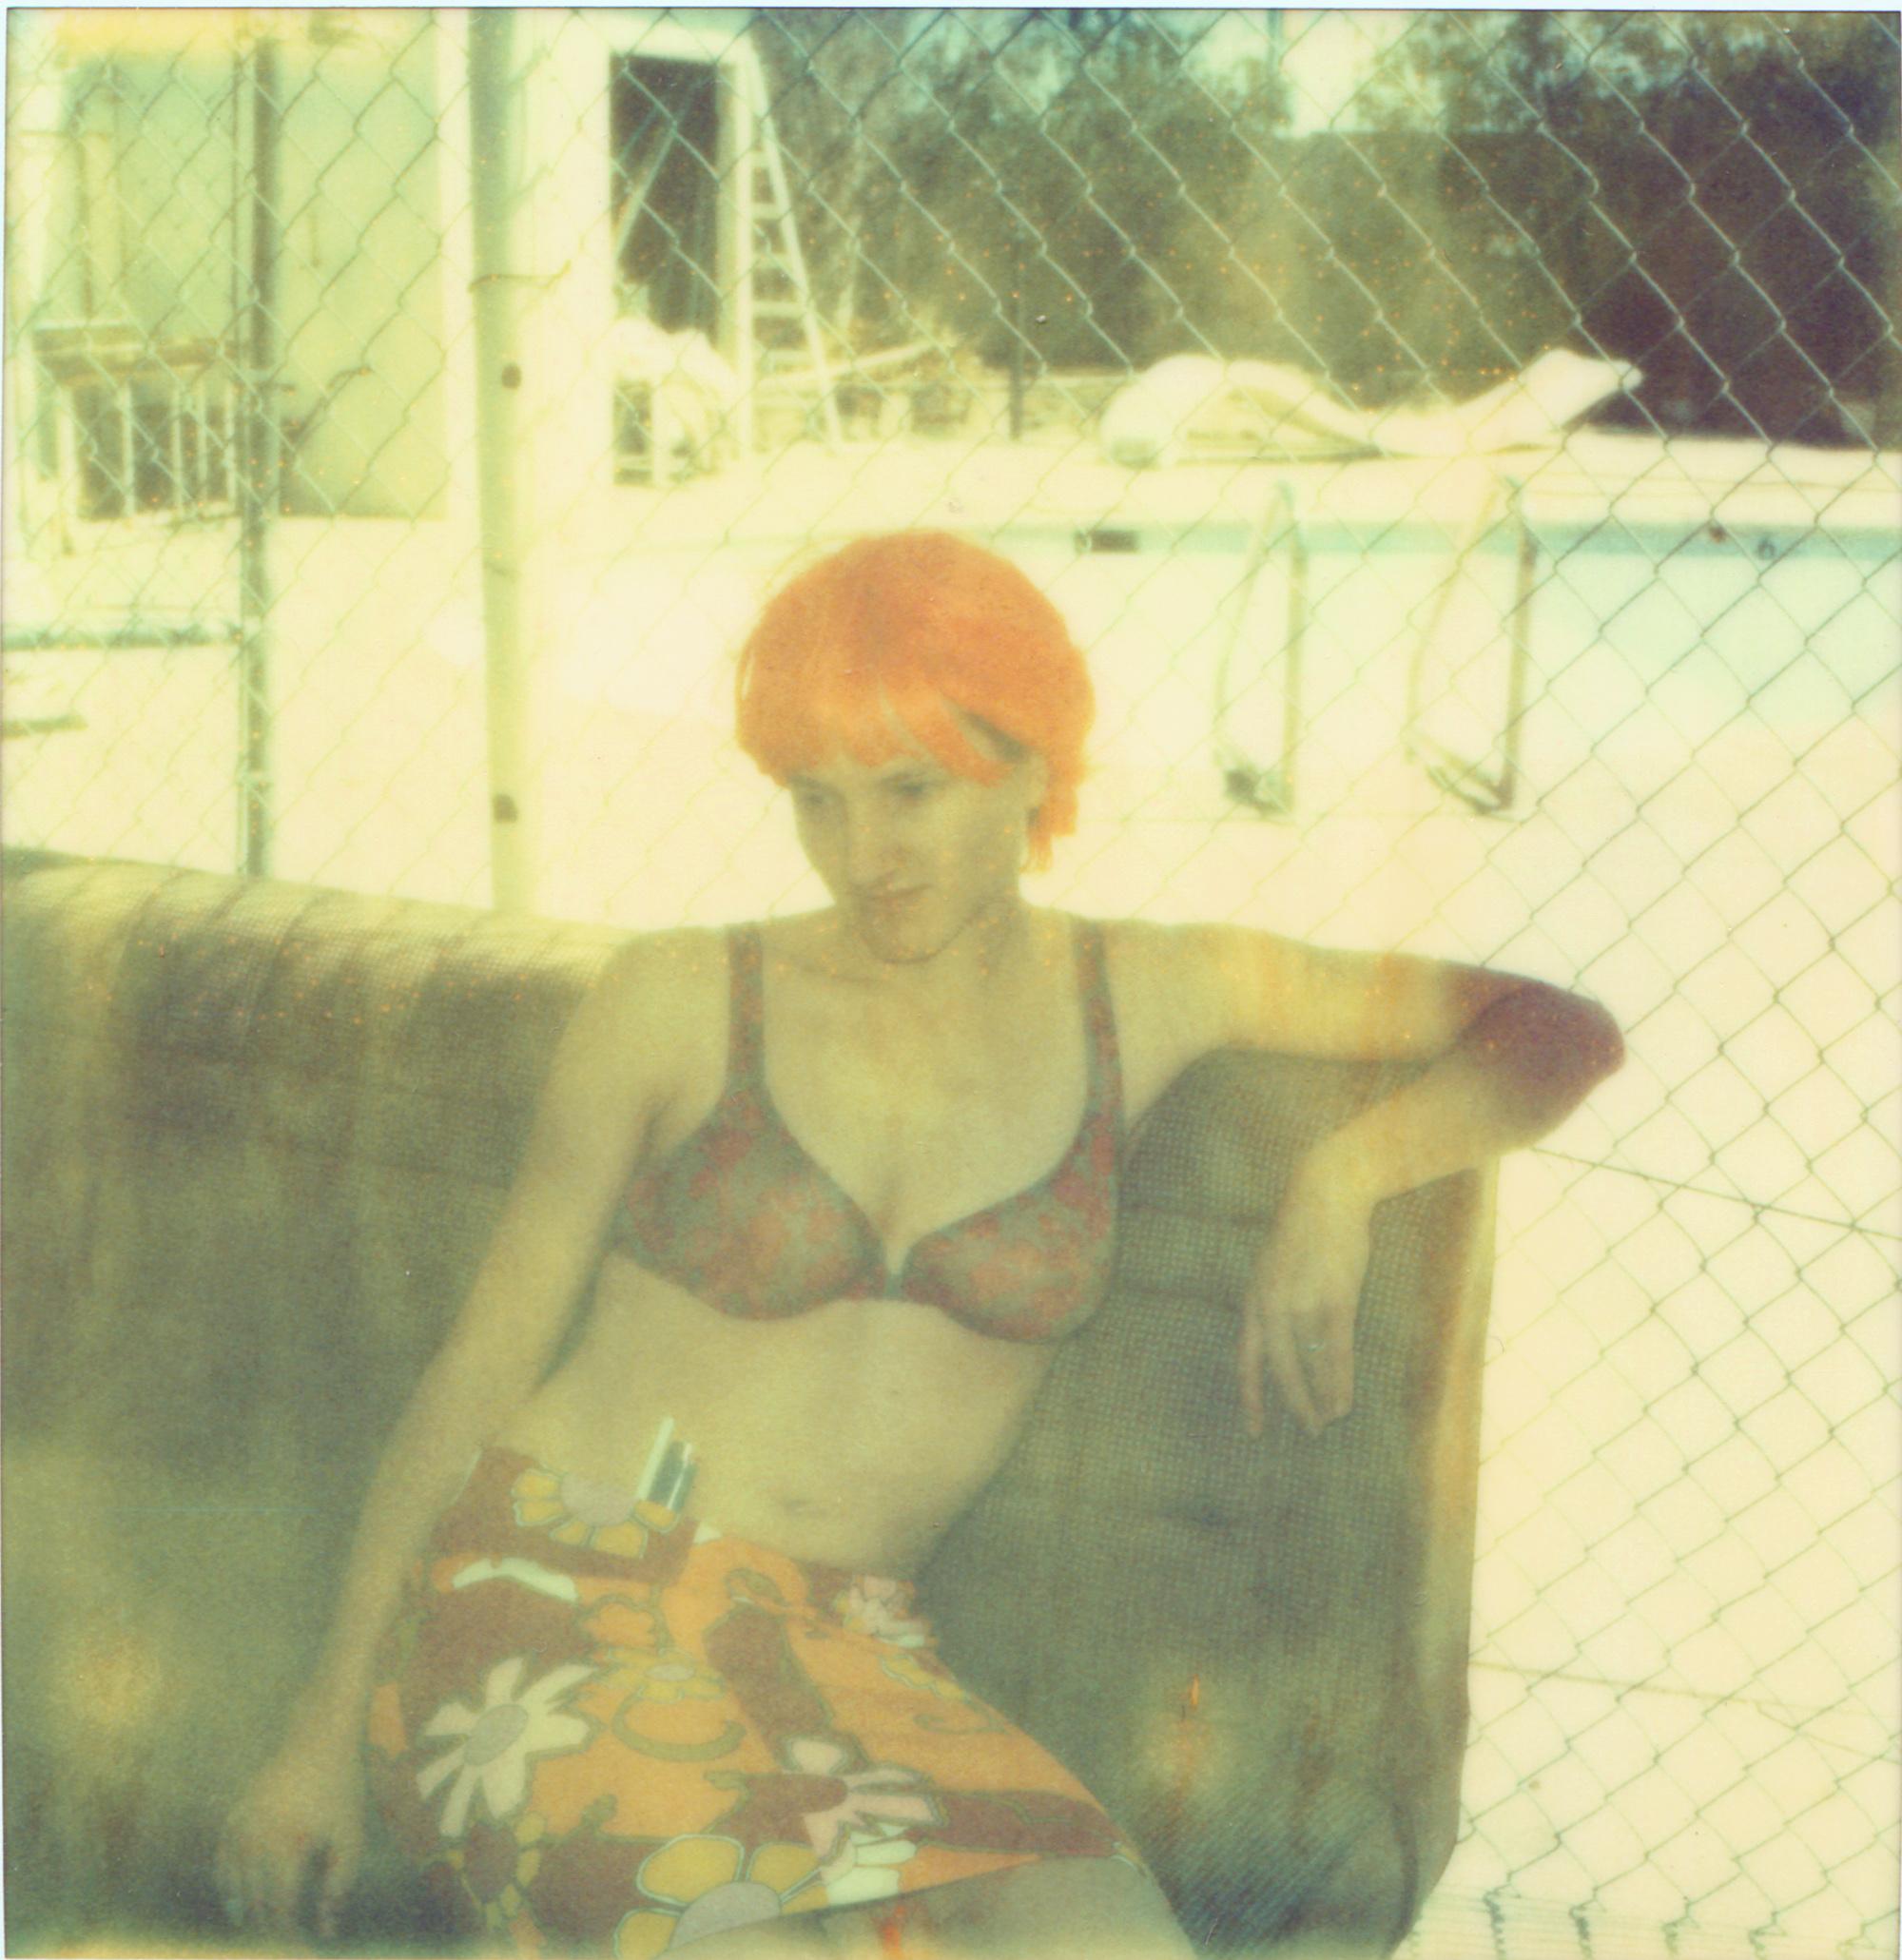 Stefanie Schneider Portrait Photograph – Mayfair Lane, #01 (Die letzte Bilderausstellung) – Polaroid, Zeitgenössisch, Frauen, Farbe